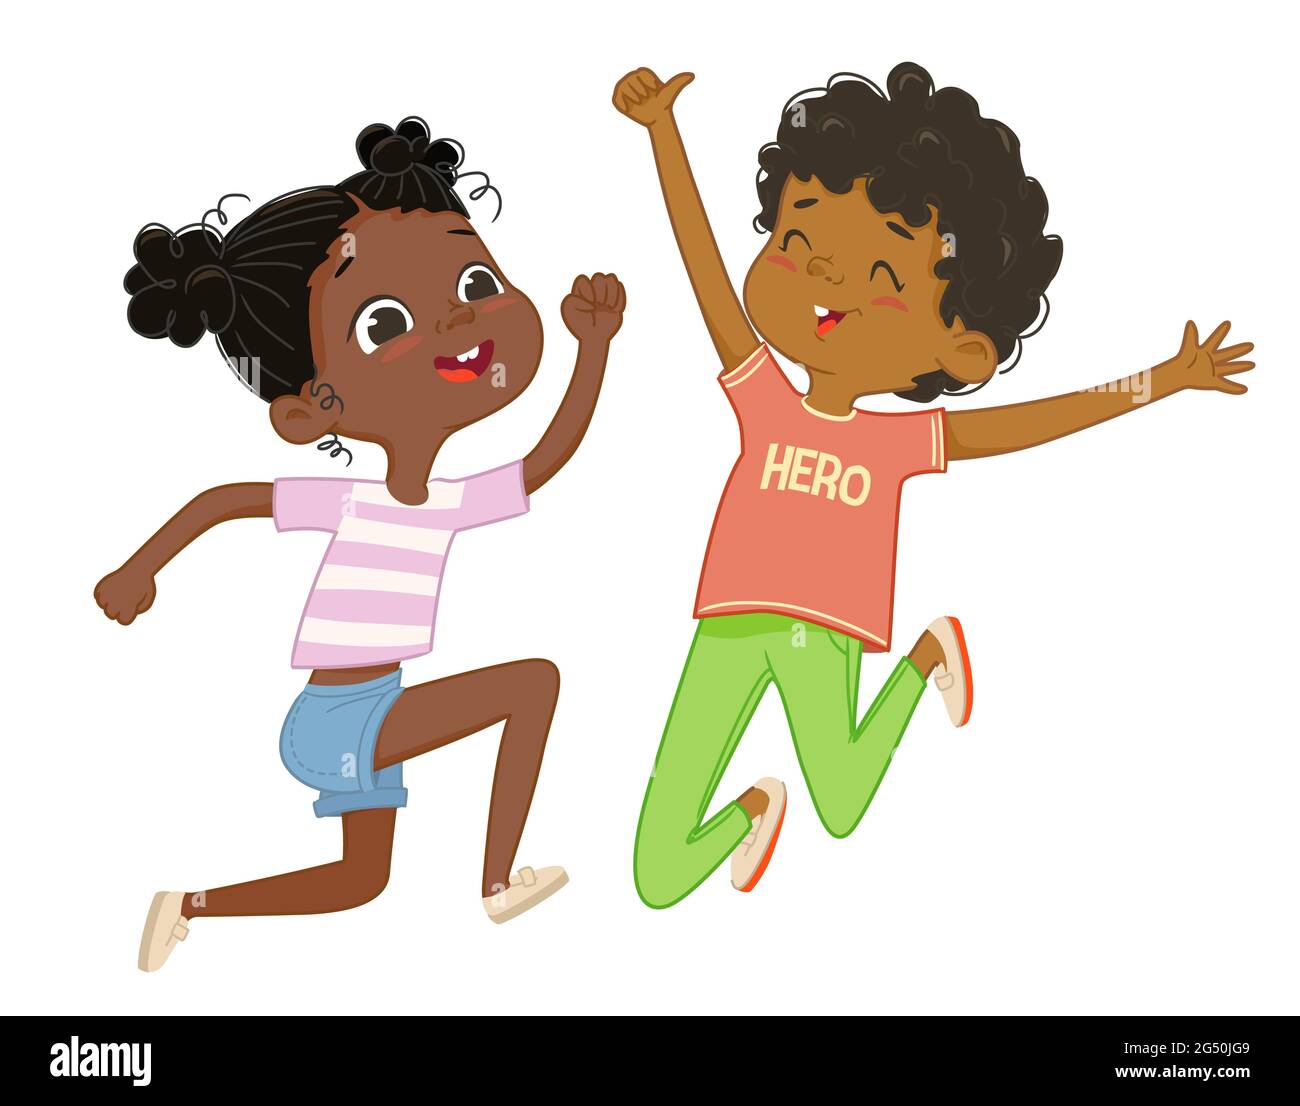 Il ragazzo e la ragazza afro-americani giocano insieme, saltano e ballano felicemente. Concetto di divertimento e momenti vivaci dell'infanzia. Illustrazioni vettoriali. Illustrazione Vettoriale